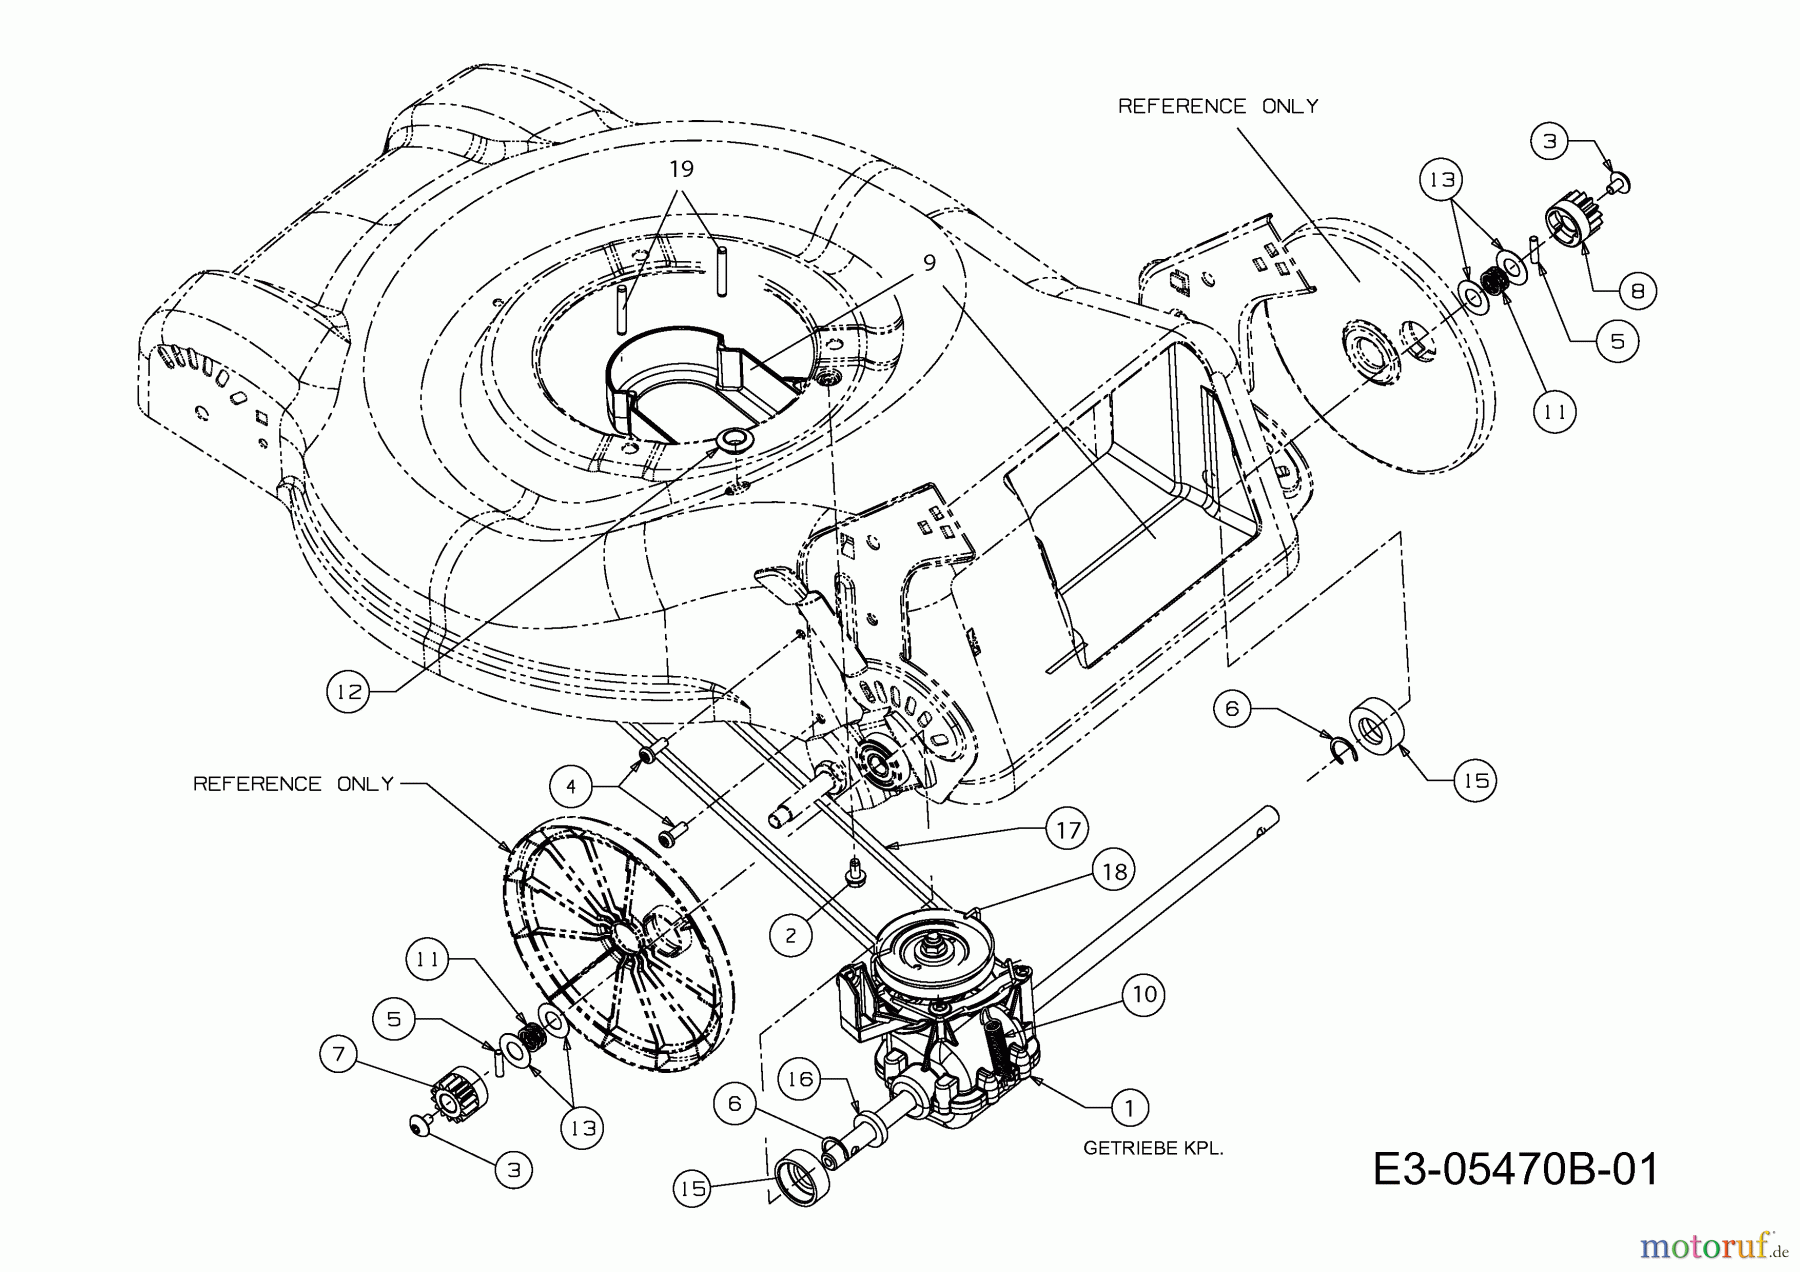  MTD Motormäher mit Antrieb 46 SPOHQ 12A-J2JD616  (2012) Getriebe